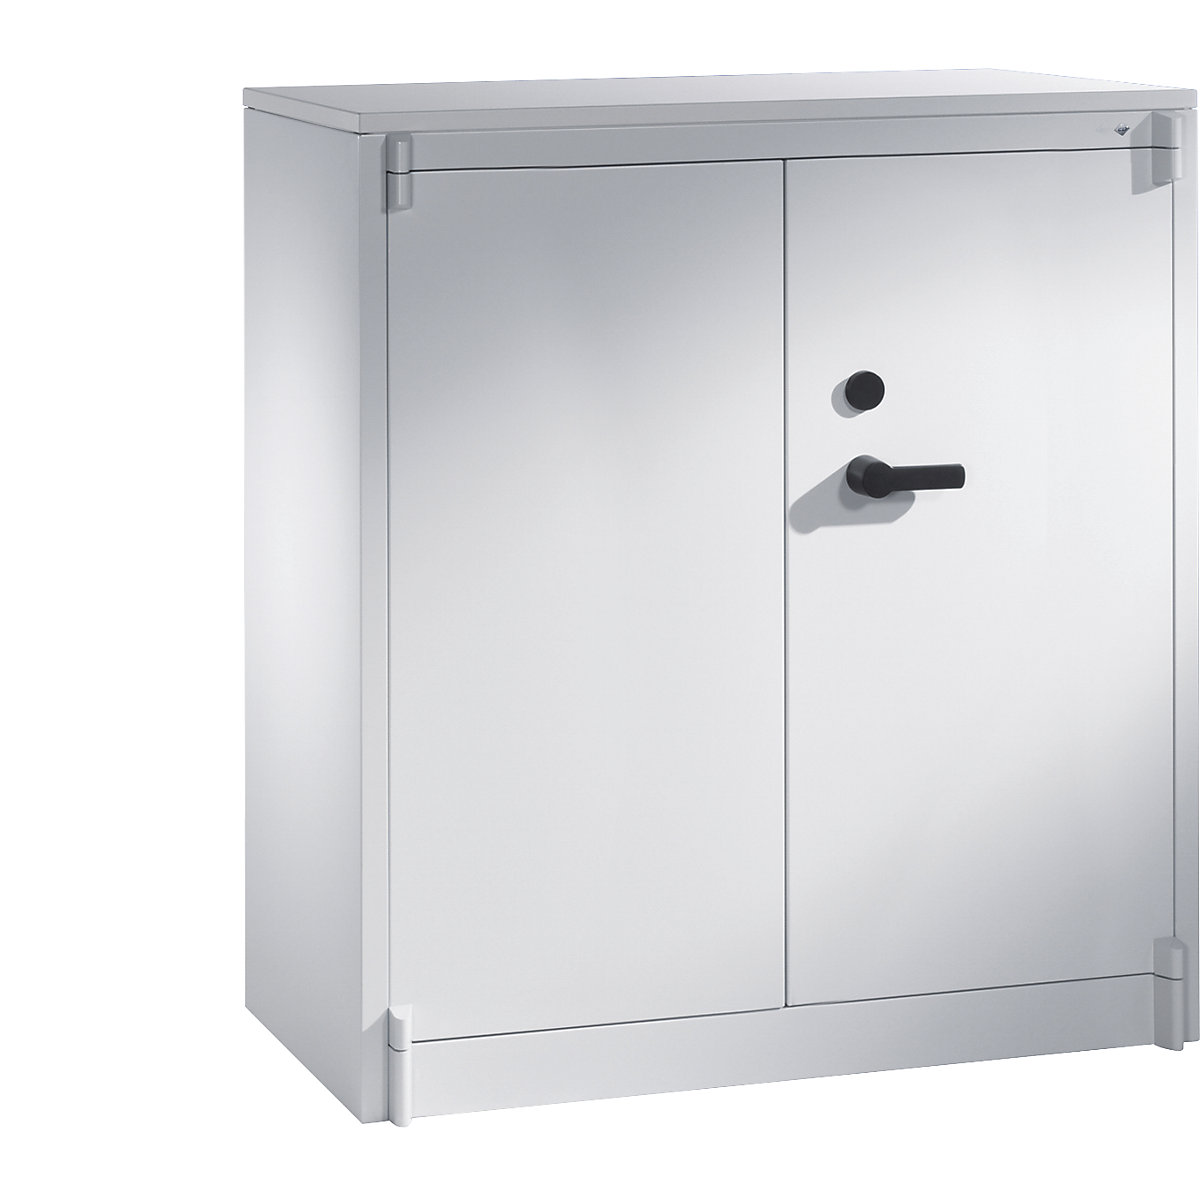 Steel cupboard, fireproof – C+P, DIN 4102 compliant, HxWxD 1226 x 1200 x 500 mm, light grey-14